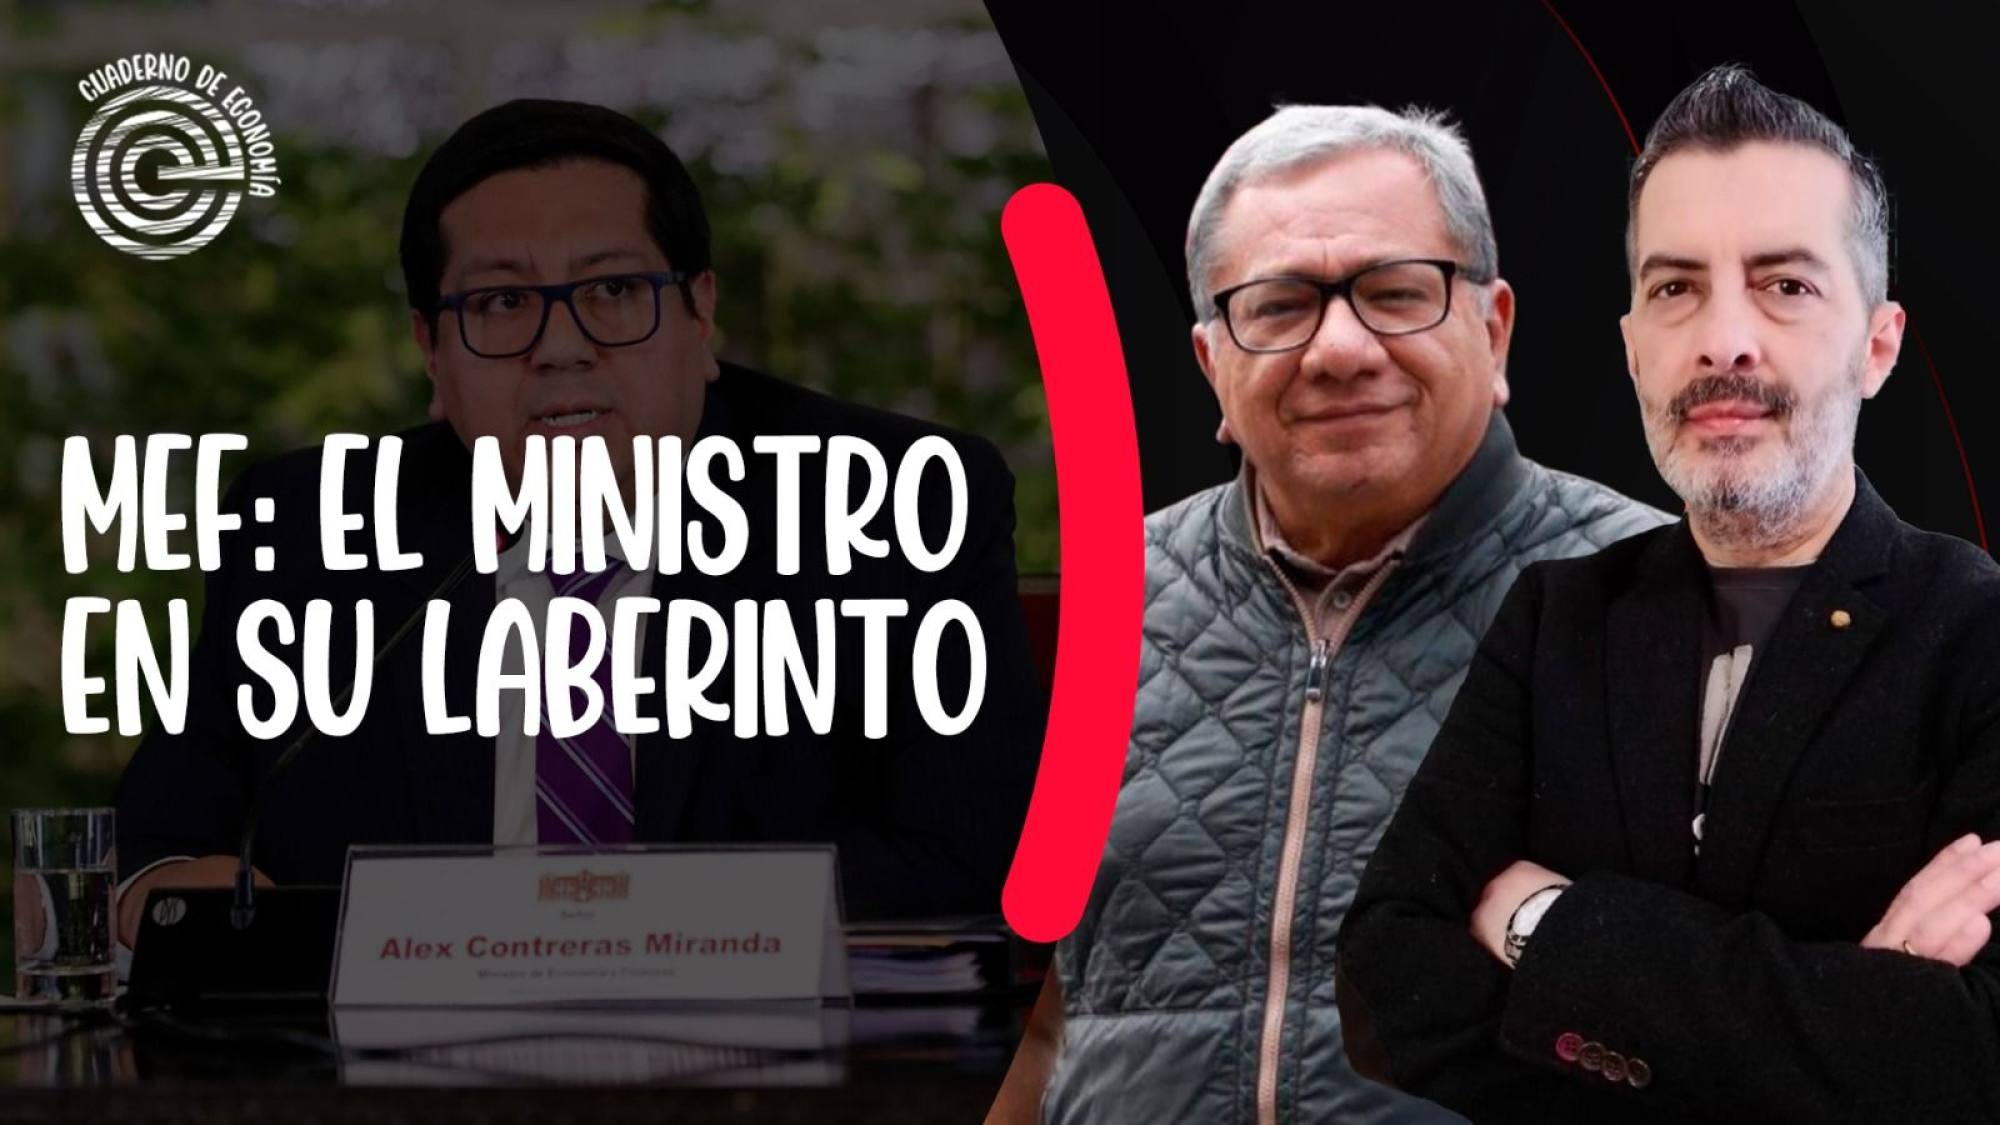 MEF: el ministro en su laberinto, Epicentro TV